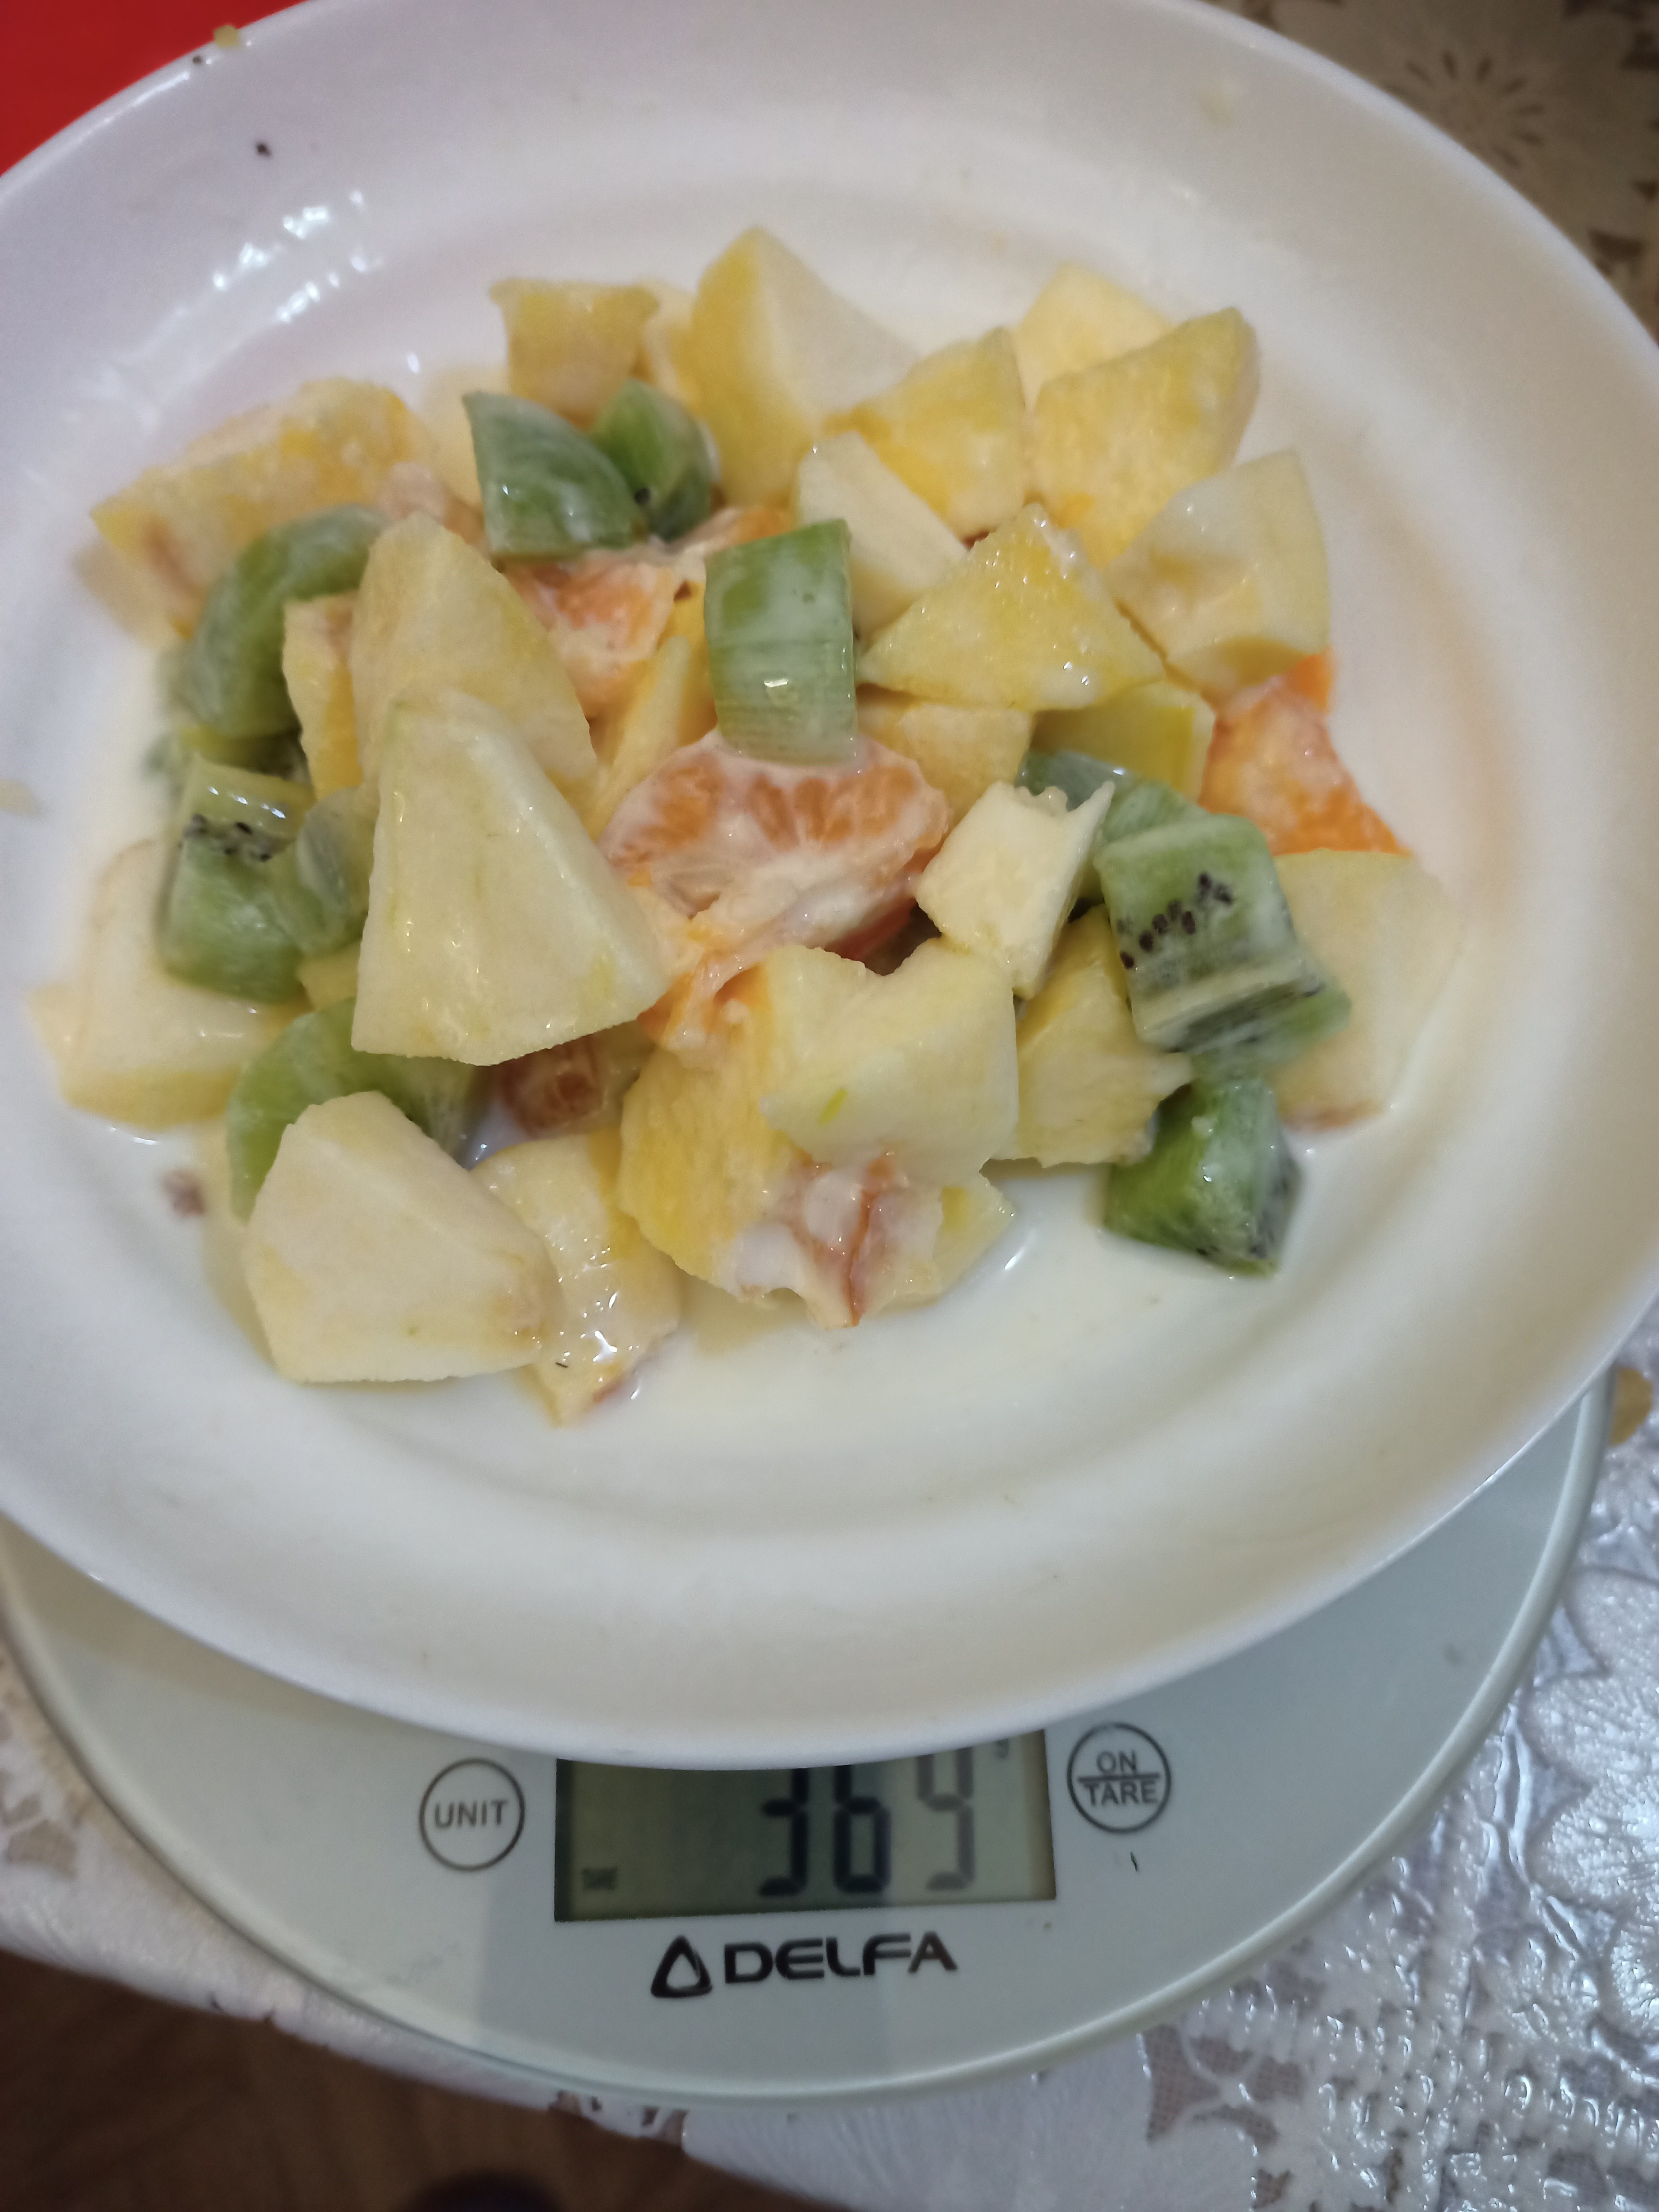 Салат фруктовый с яблоком, айвой, киви, мандарином